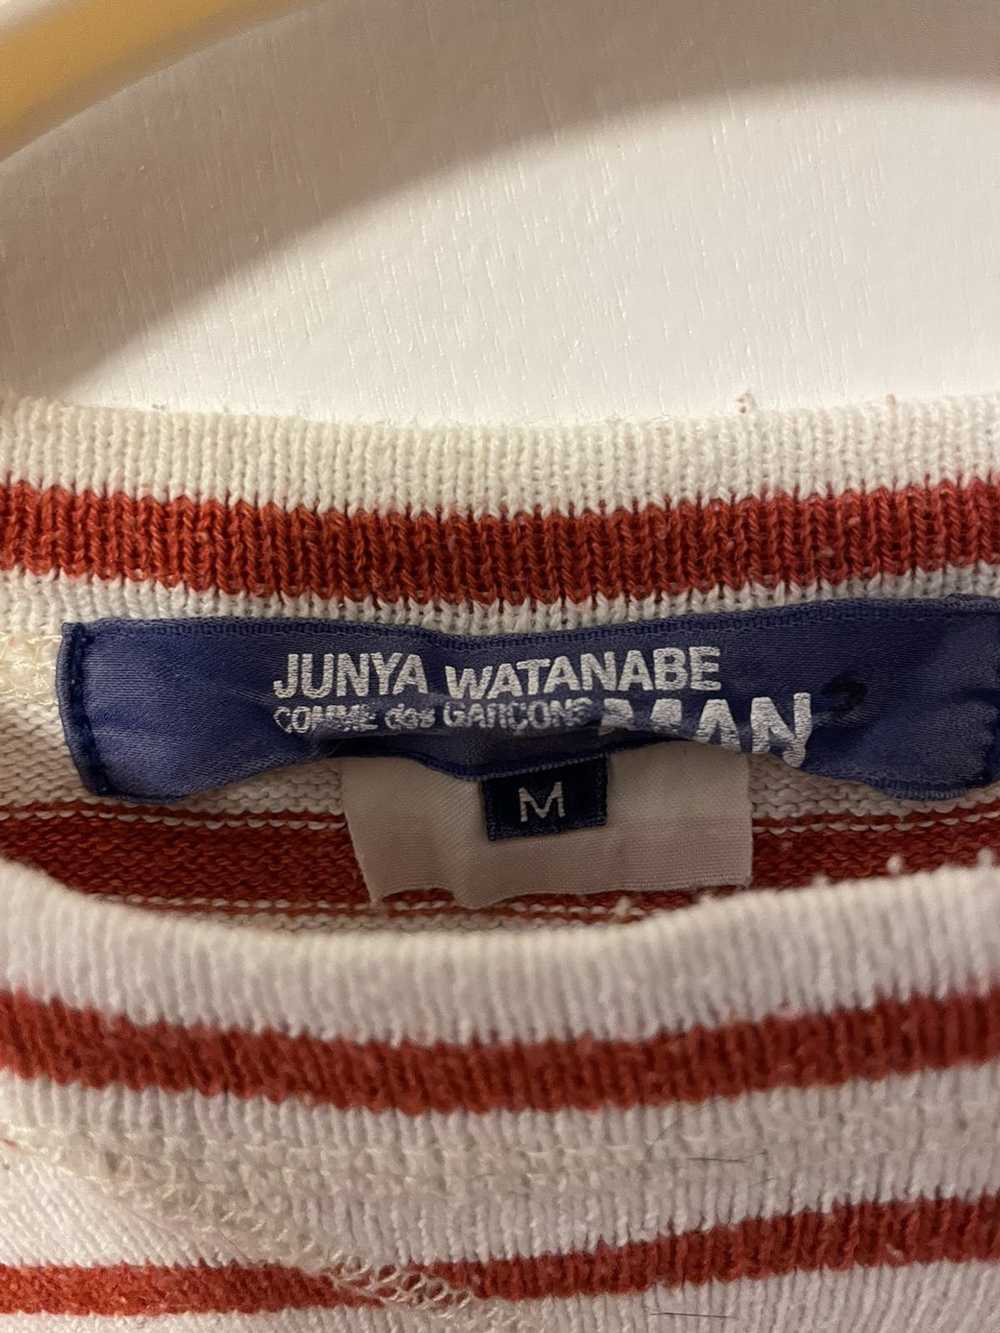 Junya Watanabe Junya Watanabe SS15 Long Sleeve - image 3